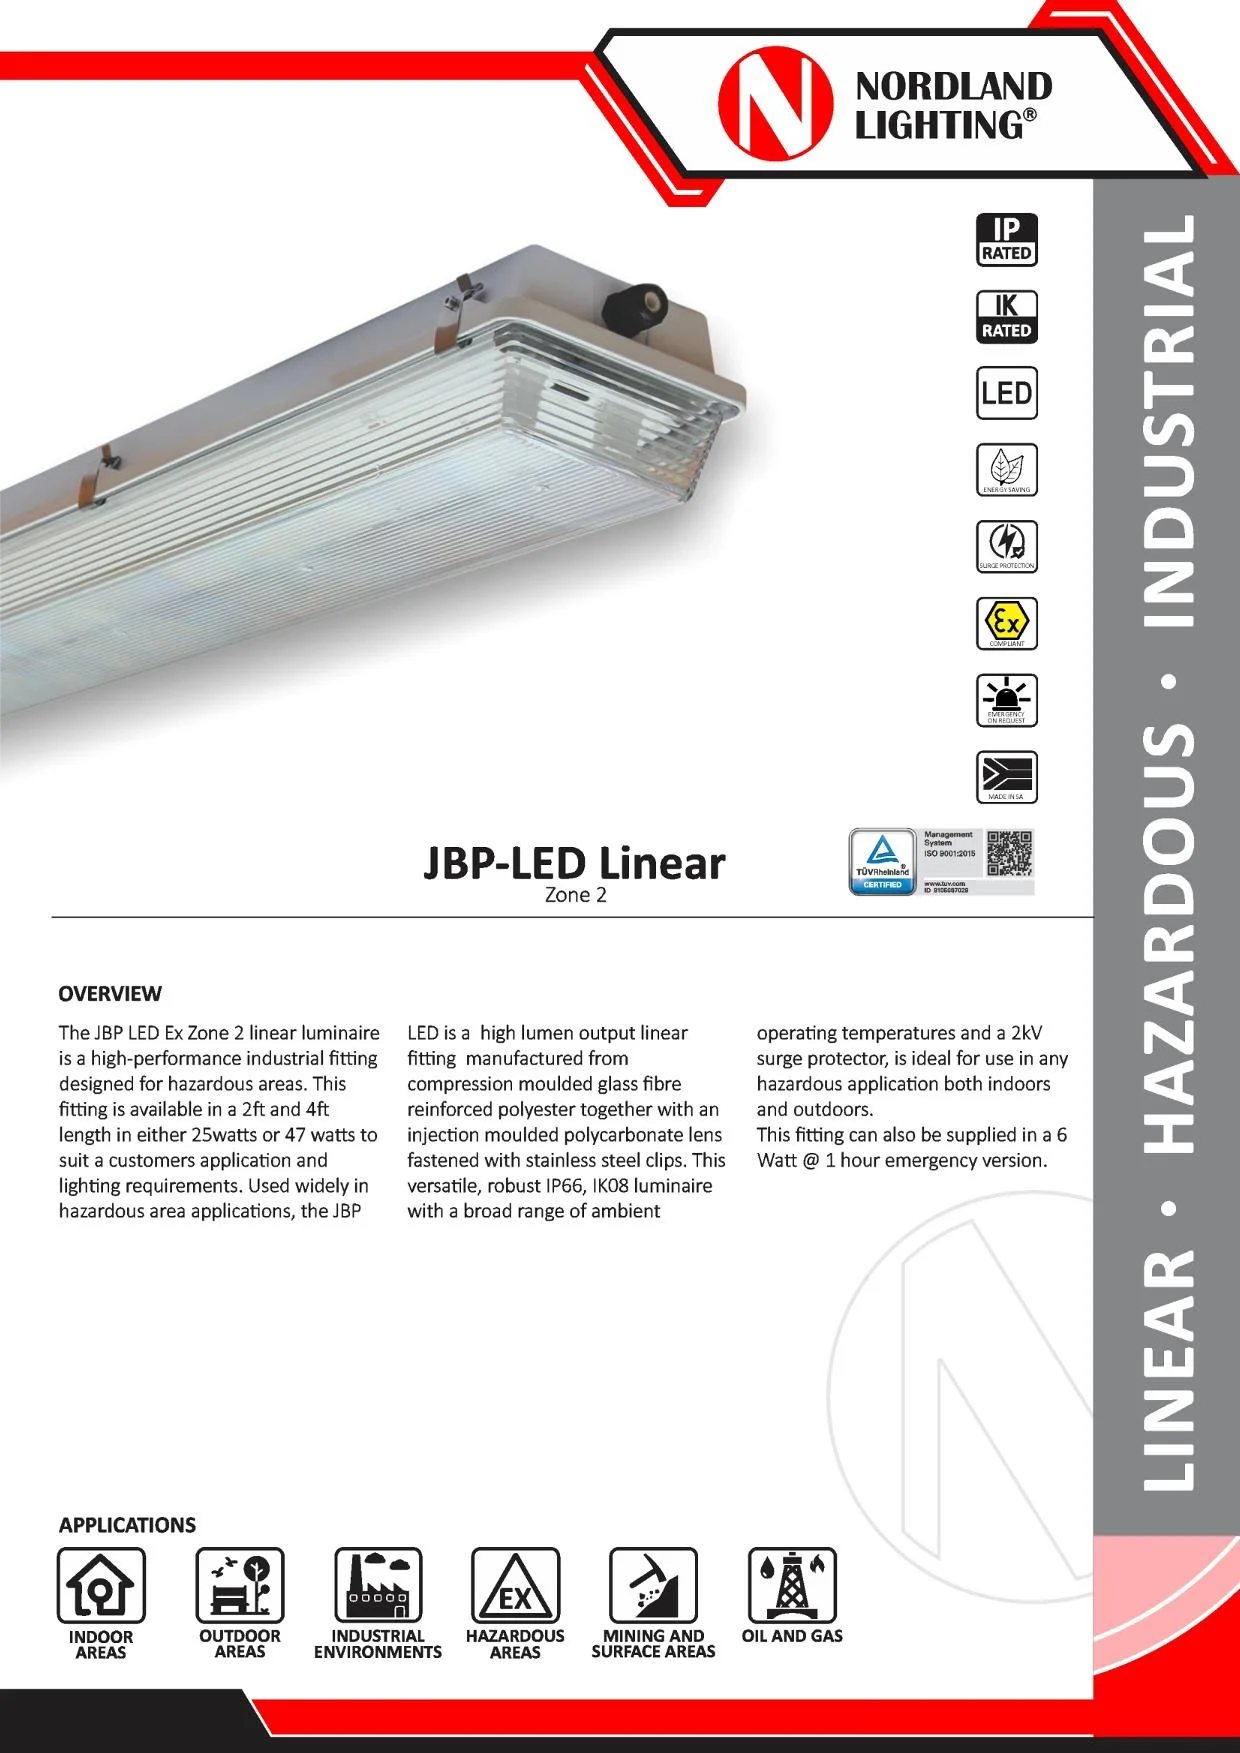 NL21 Nordland JBP-LED ExZone 2 Linear Luminaire